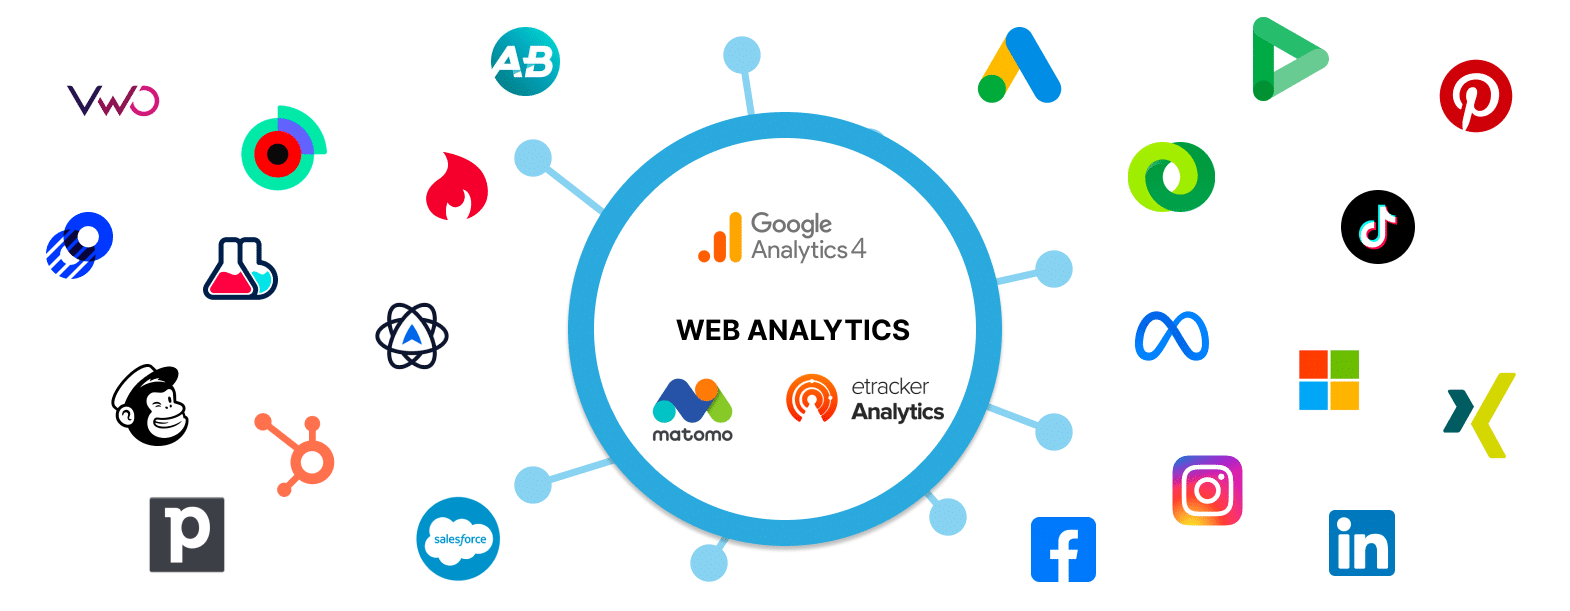 Web Analytics im Zentrum der Online Marketing Tools